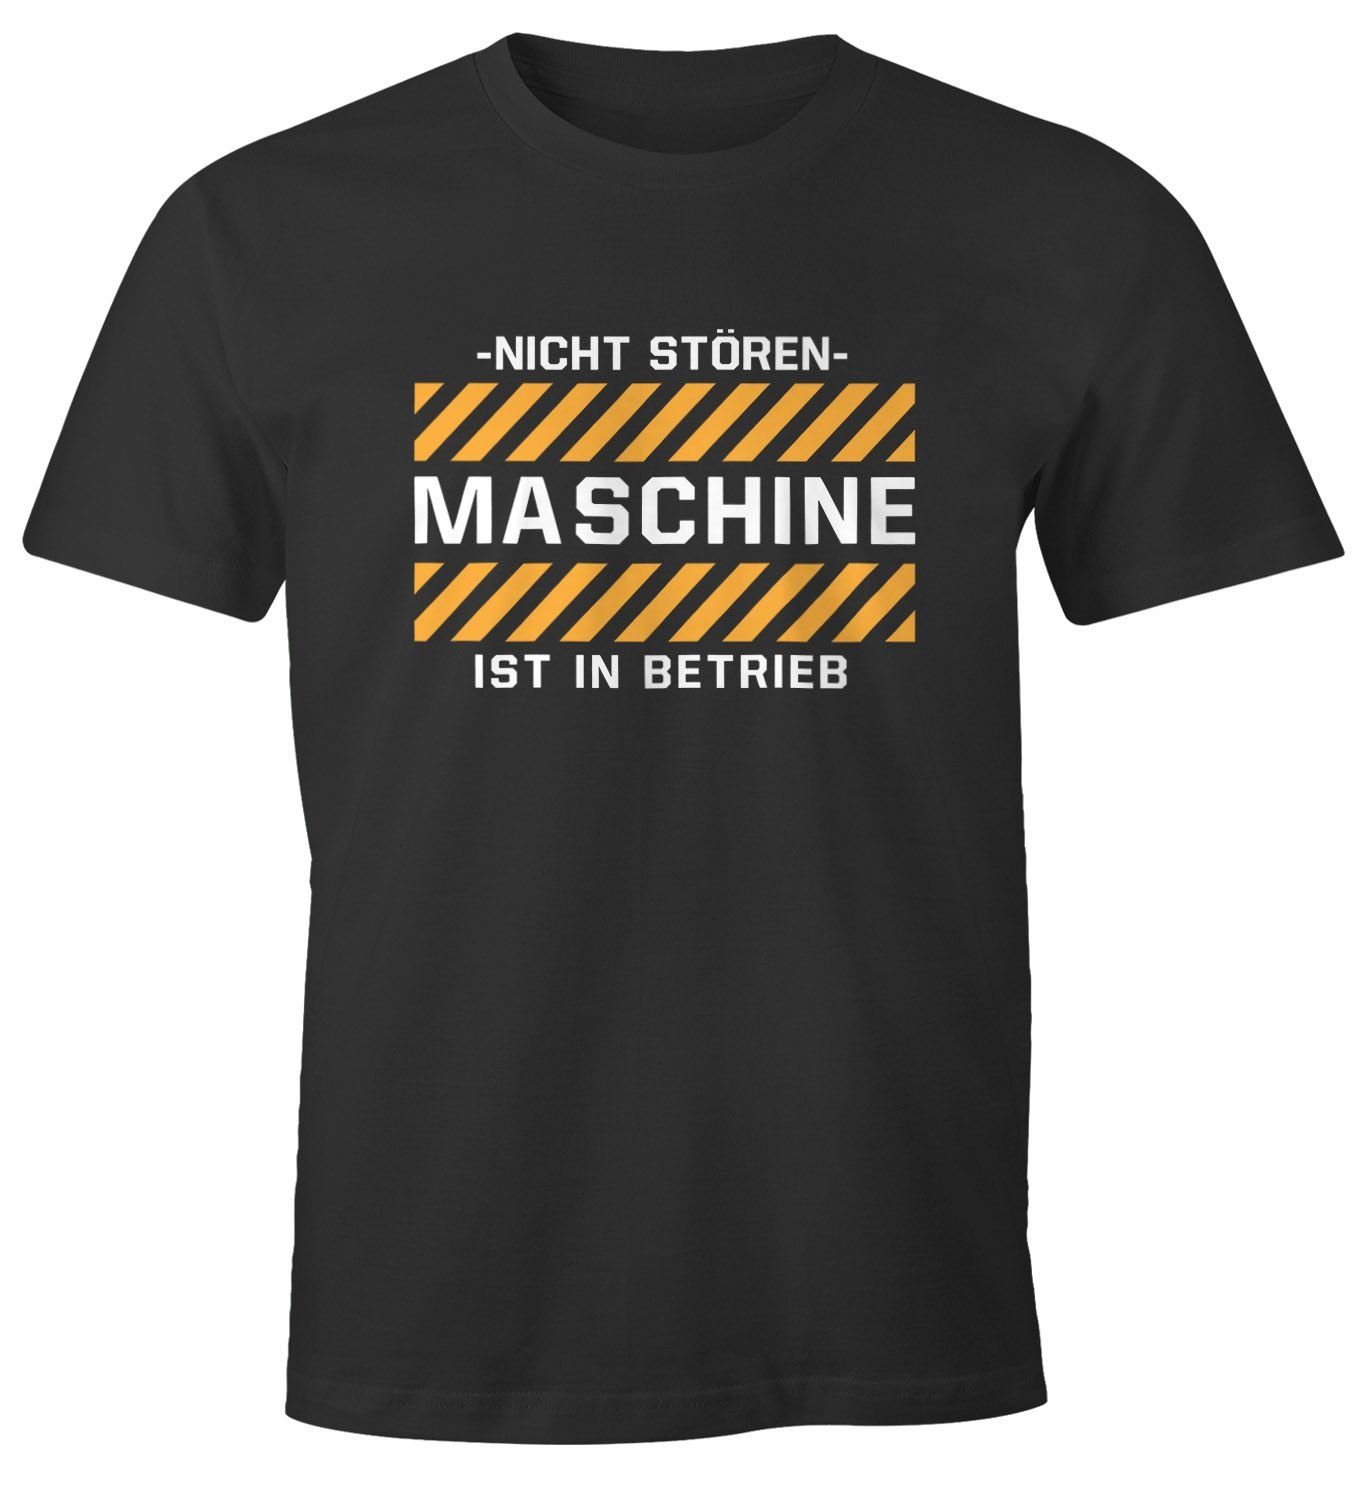 Maschine Betrieb ist Fun-Shirt stören- Print-Shirt mit MoonWorks Print Spruch Herren Moonworks® in -Nicht lustiges T-Shirt